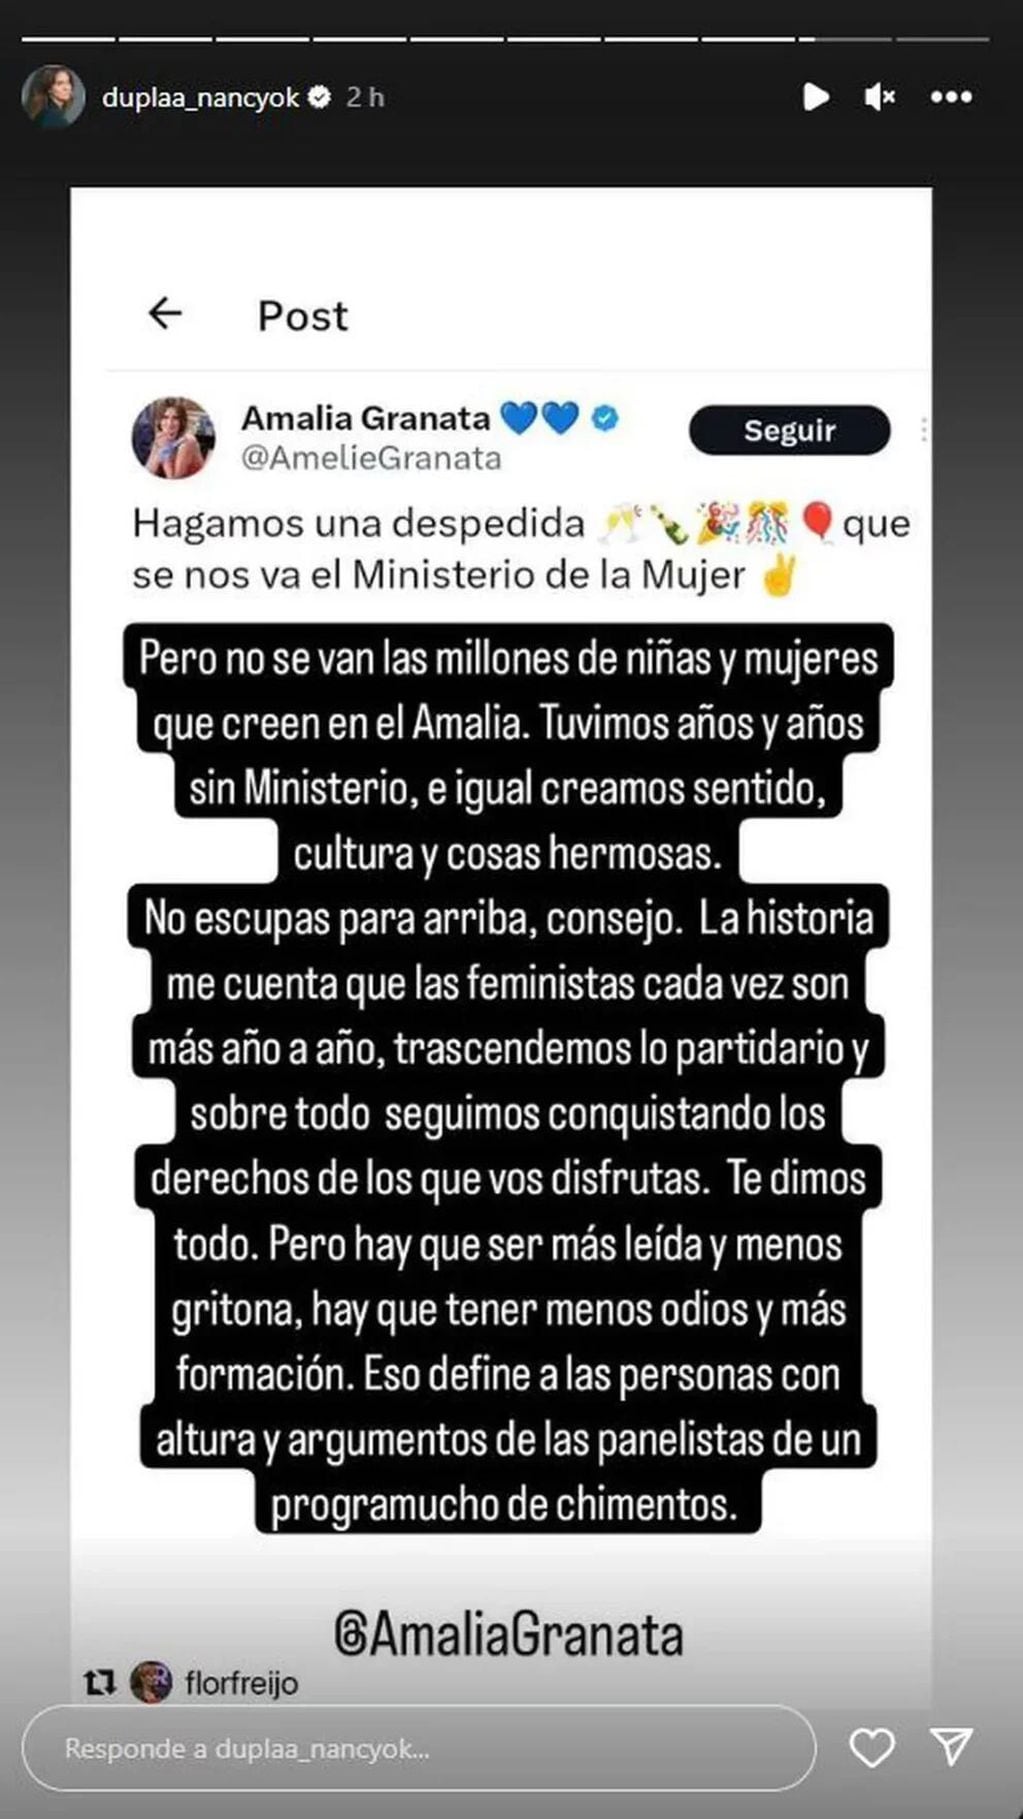 Nancy Duplaá contra los dichos de Amalia Granata. Captura: Instagram / @duplaa_nancyok